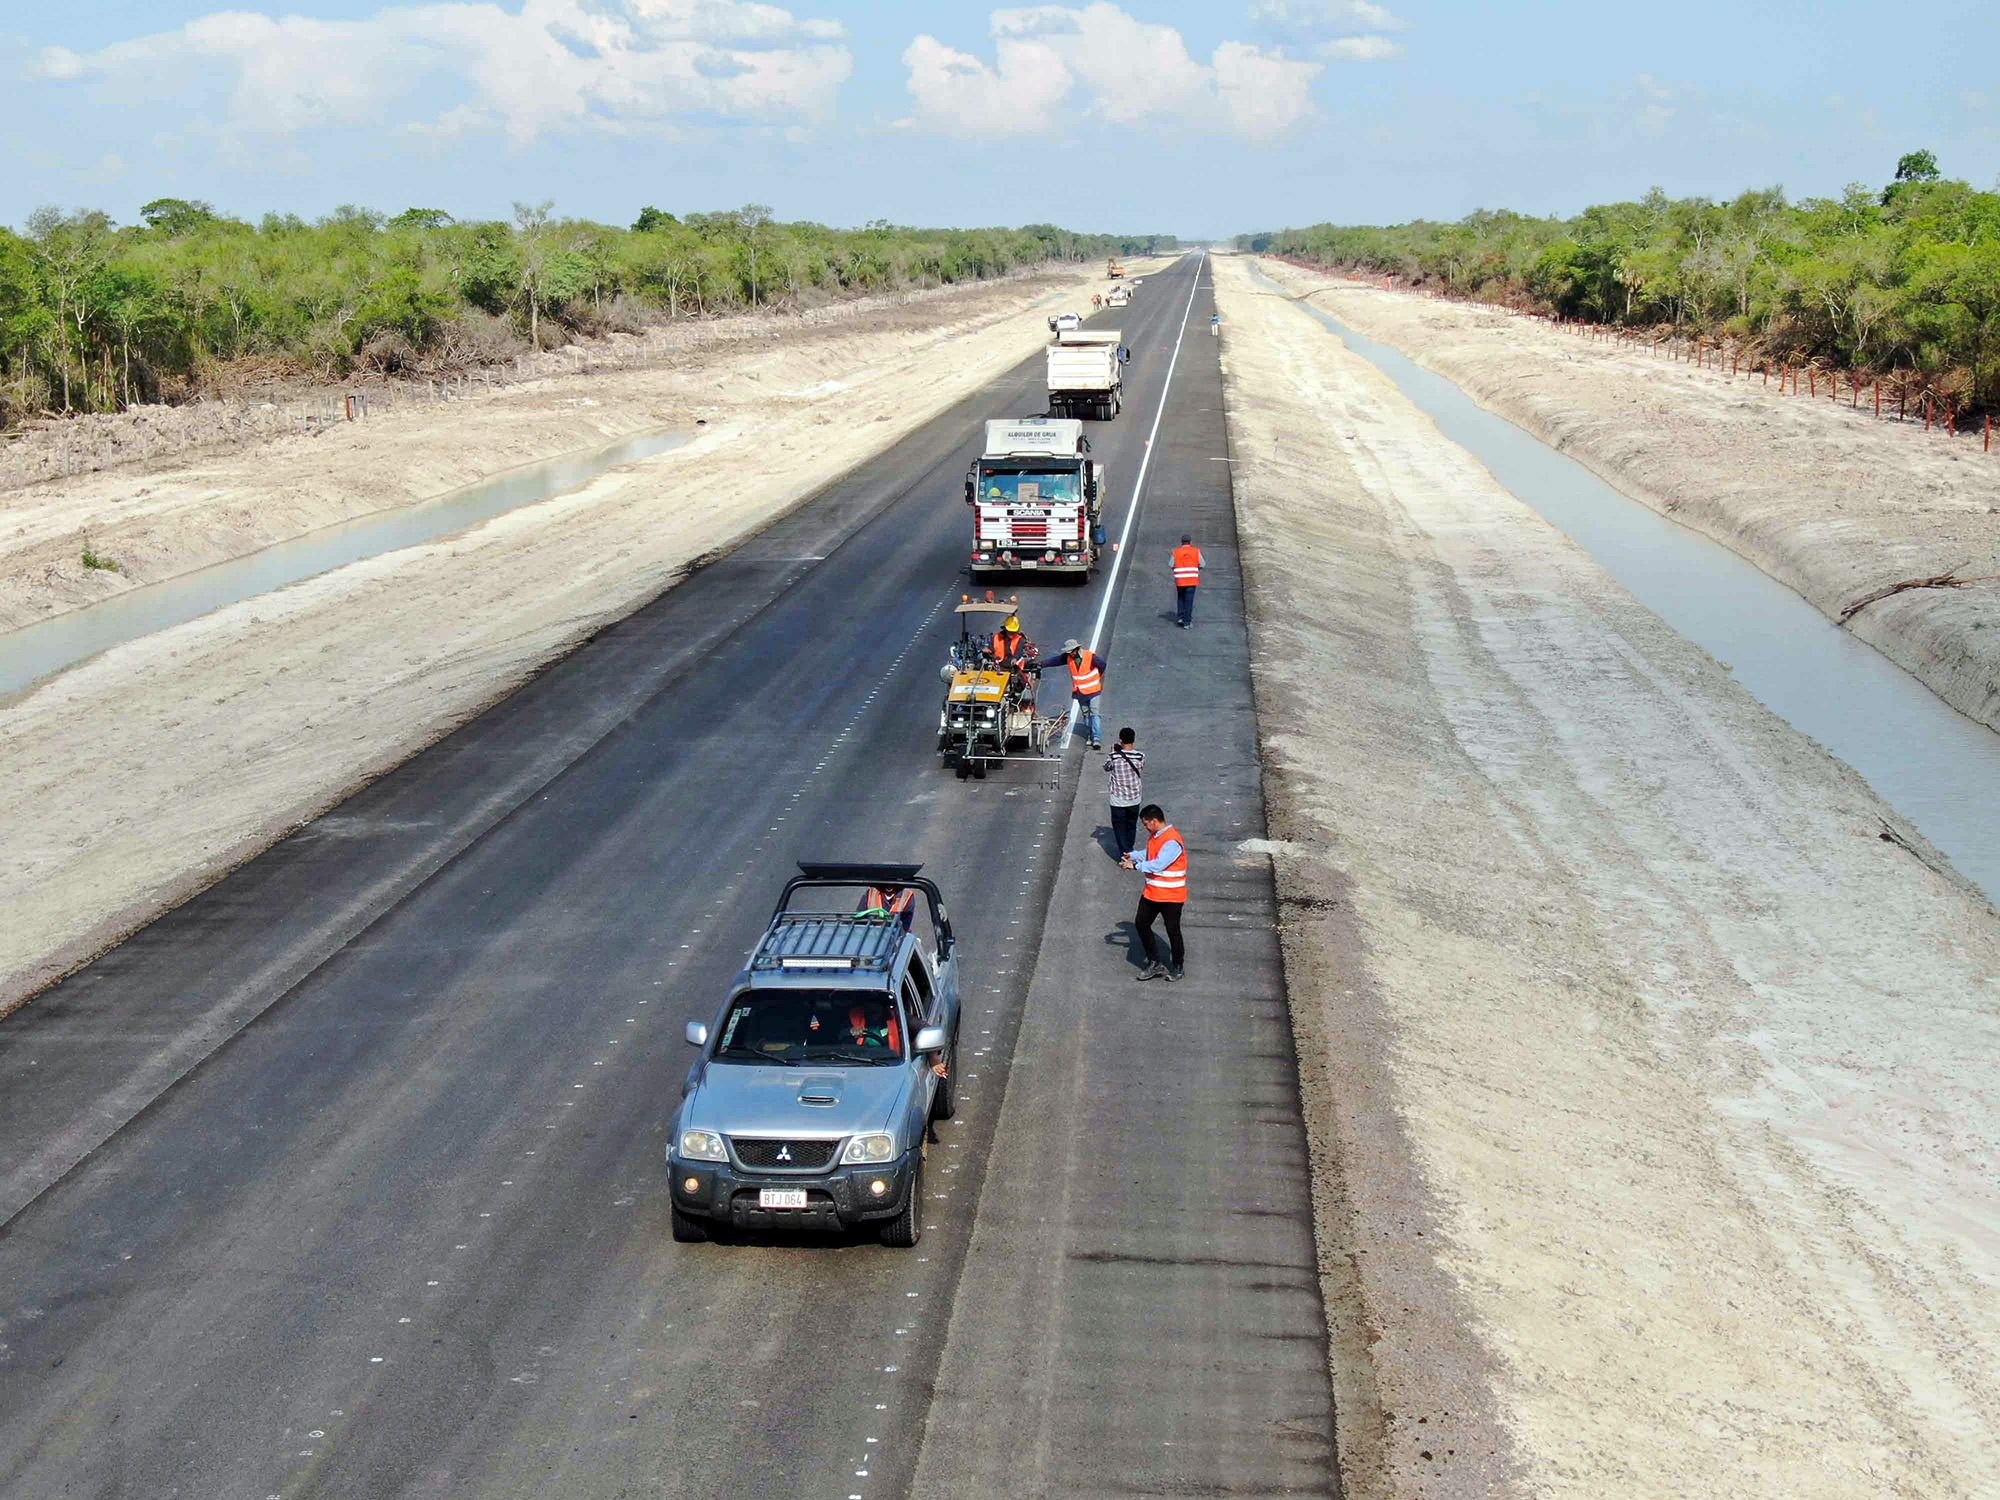 Rodovia corta o Chaco Paraguaio, hoje quase intransponível devido aos alagados e atoleiros